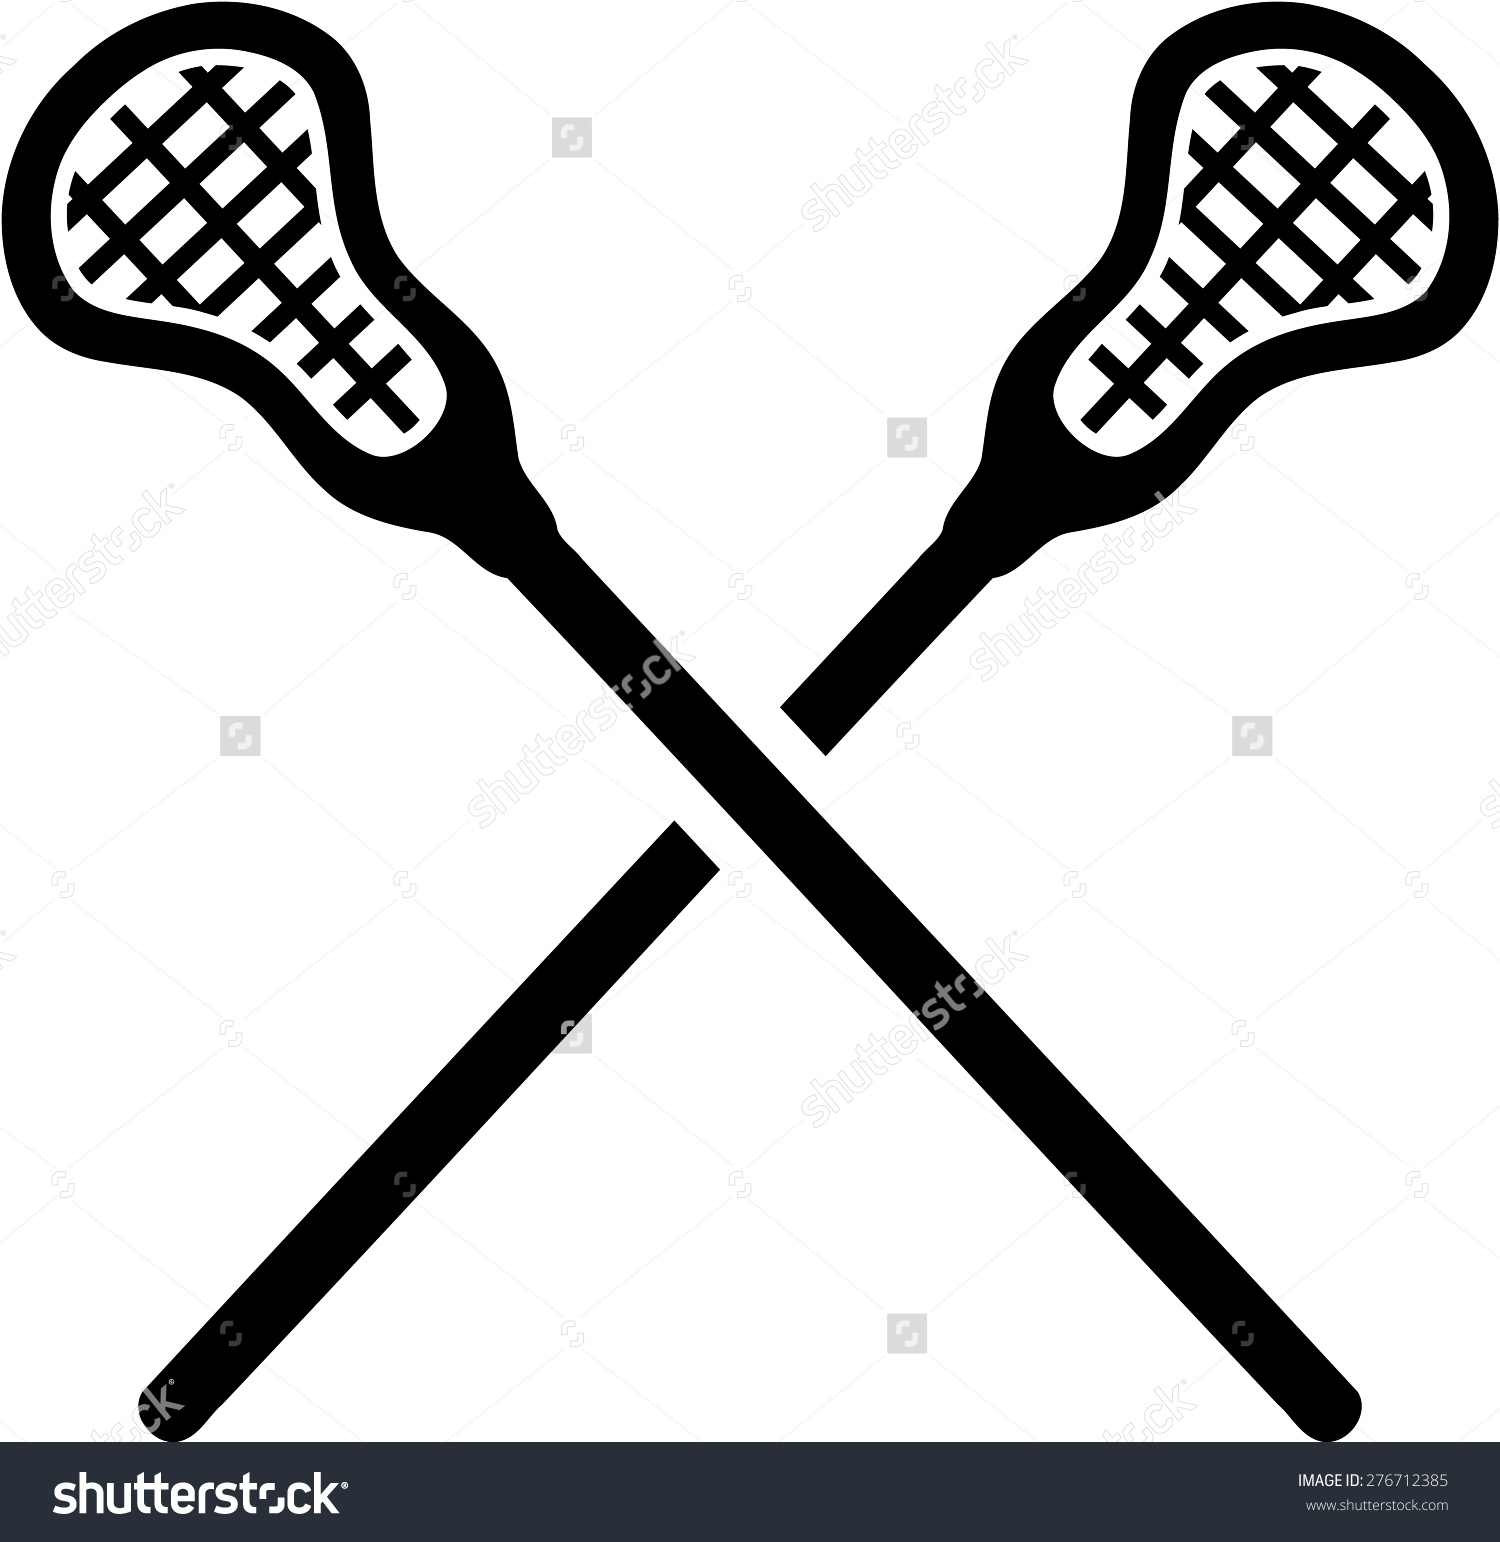 Lacrosse sticks clip art vect